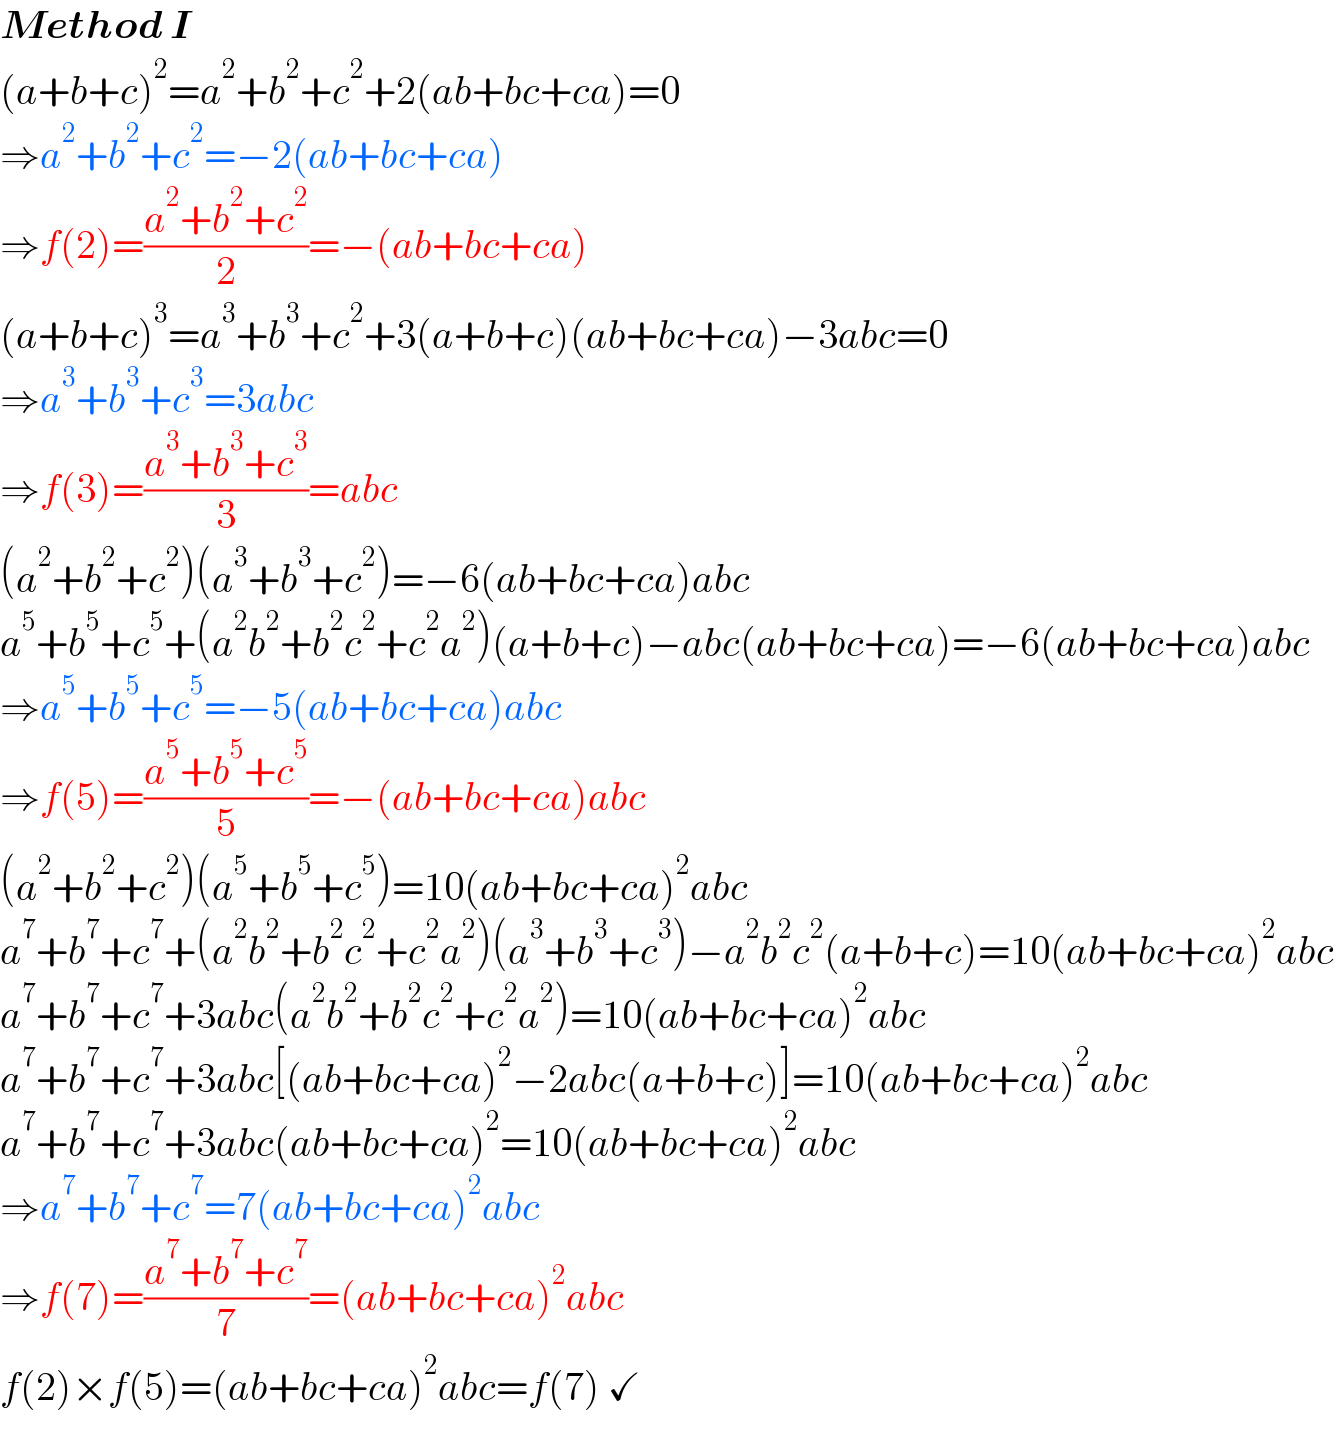 Method I  (a+b+c)^2 =a^2 +b^2 +c^2 +2(ab+bc+ca)=0  ⇒a^2 +b^2 +c^2 =−2(ab+bc+ca)  ⇒f(2)=((a^2 +b^2 +c^2 )/2)=−(ab+bc+ca)  (a+b+c)^3 =a^3 +b^3 +c^2 +3(a+b+c)(ab+bc+ca)−3abc=0  ⇒a^3 +b^3 +c^3 =3abc  ⇒f(3)=((a^3 +b^3 +c^3 )/3)=abc  (a^2 +b^2 +c^2 )(a^3 +b^3 +c^2 )=−6(ab+bc+ca)abc  a^5 +b^5 +c^5 +(a^2 b^2 +b^2 c^2 +c^2 a^2 )(a+b+c)−abc(ab+bc+ca)=−6(ab+bc+ca)abc  ⇒a^5 +b^5 +c^5 =−5(ab+bc+ca)abc  ⇒f(5)=((a^5 +b^5 +c^5 )/5)=−(ab+bc+ca)abc  (a^2 +b^2 +c^2 )(a^5 +b^5 +c^5 )=10(ab+bc+ca)^2 abc  a^7 +b^7 +c^7 +(a^2 b^2 +b^2 c^2 +c^2 a^2 )(a^3 +b^3 +c^3 )−a^2 b^2 c^2 (a+b+c)=10(ab+bc+ca)^2 abc  a^7 +b^7 +c^7 +3abc(a^2 b^2 +b^2 c^2 +c^2 a^2 )=10(ab+bc+ca)^2 abc  a^7 +b^7 +c^7 +3abc[(ab+bc+ca)^2 −2abc(a+b+c)]=10(ab+bc+ca)^2 abc  a^7 +b^7 +c^7 +3abc(ab+bc+ca)^2 =10(ab+bc+ca)^2 abc  ⇒a^7 +b^7 +c^7 =7(ab+bc+ca)^2 abc  ⇒f(7)=((a^7 +b^7 +c^7 )/7)=(ab+bc+ca)^2 abc  f(2)×f(5)=(ab+bc+ca)^2 abc=f(7) ✓  